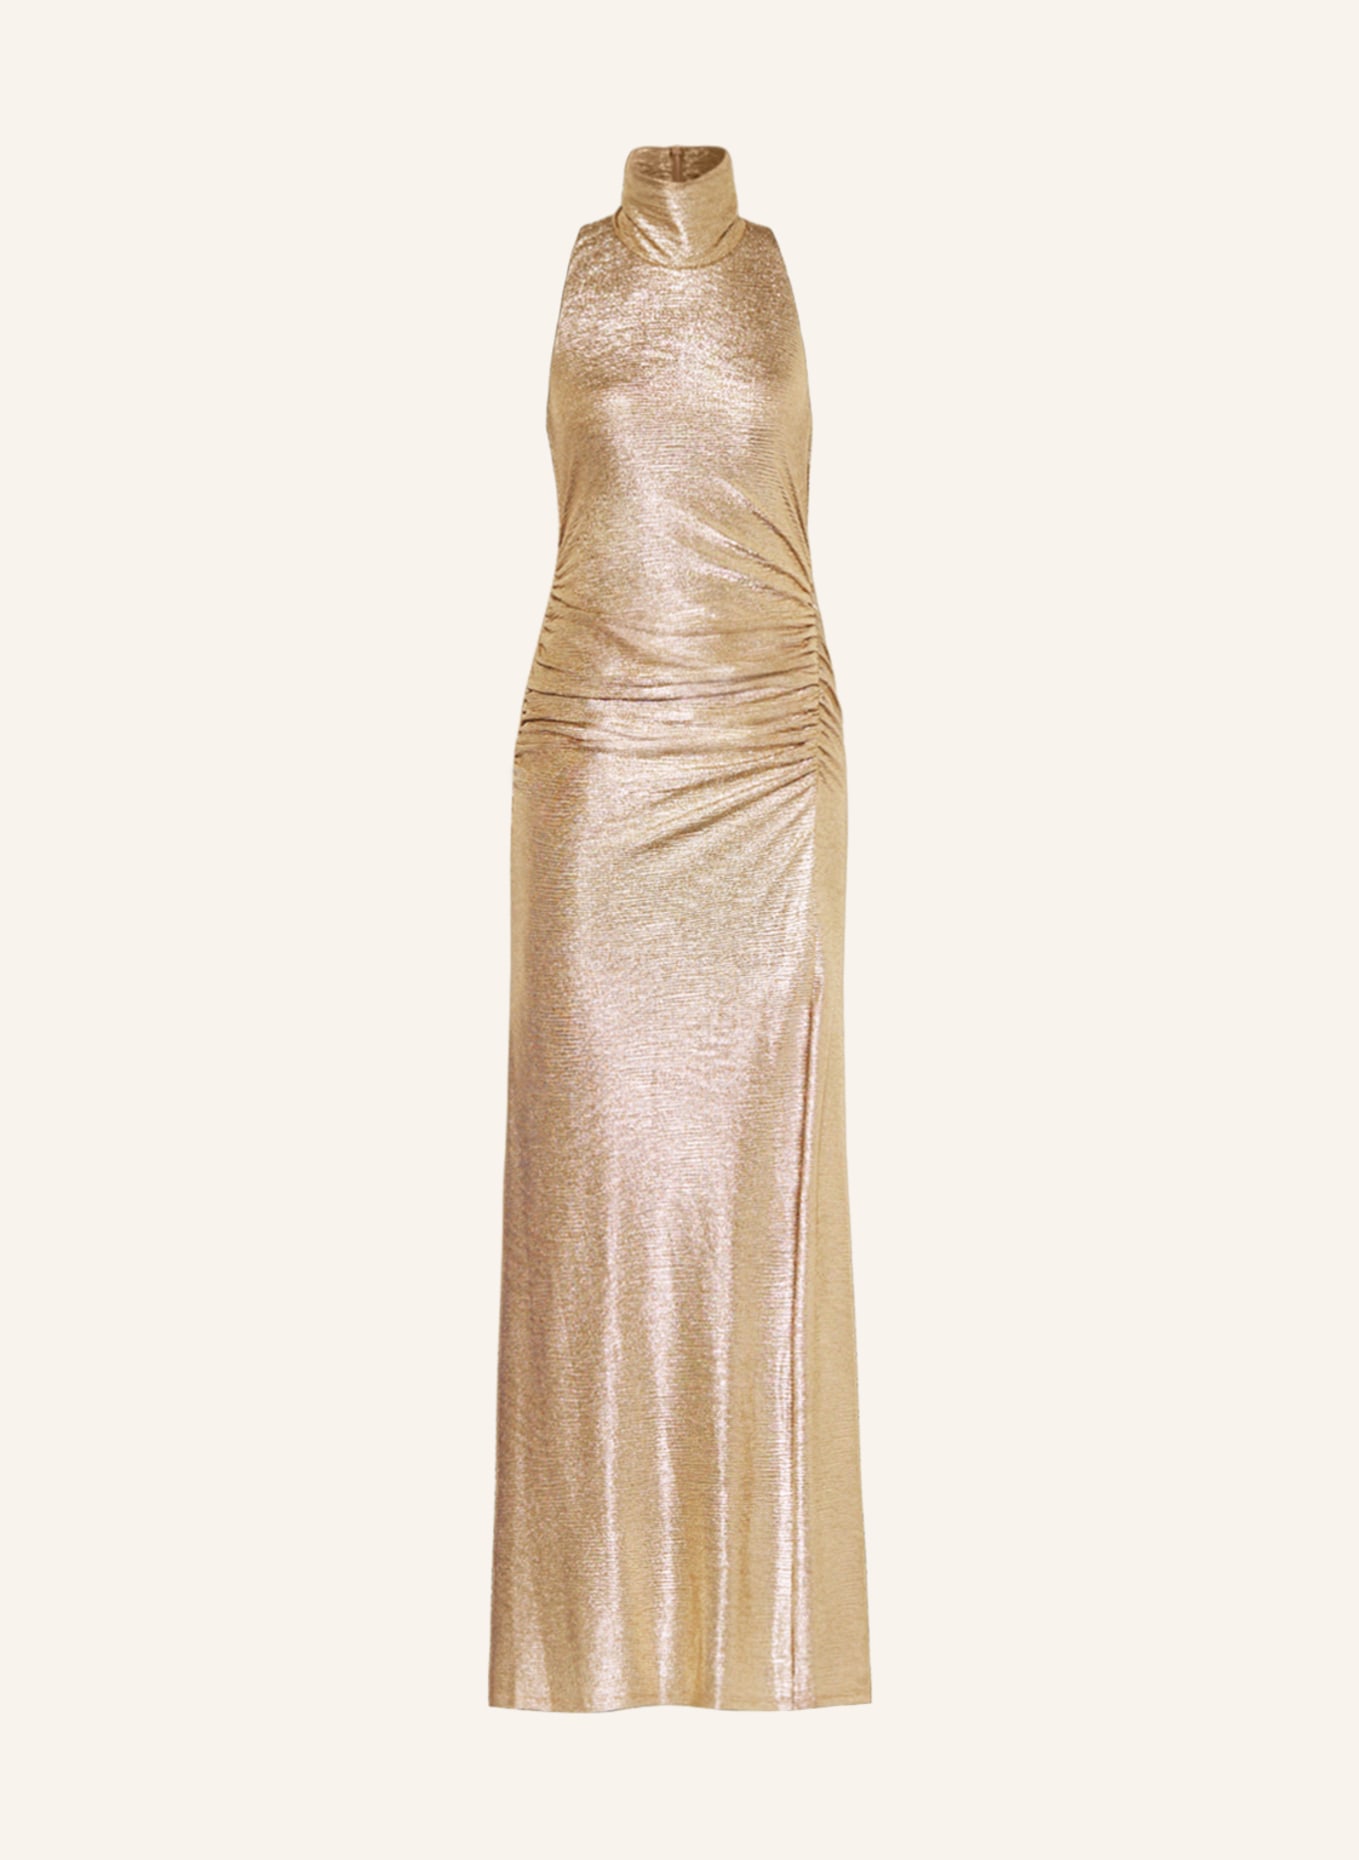 LAUREN RALPH LAUREN Abendkleid, Farbe: GOLD (Bild 1)